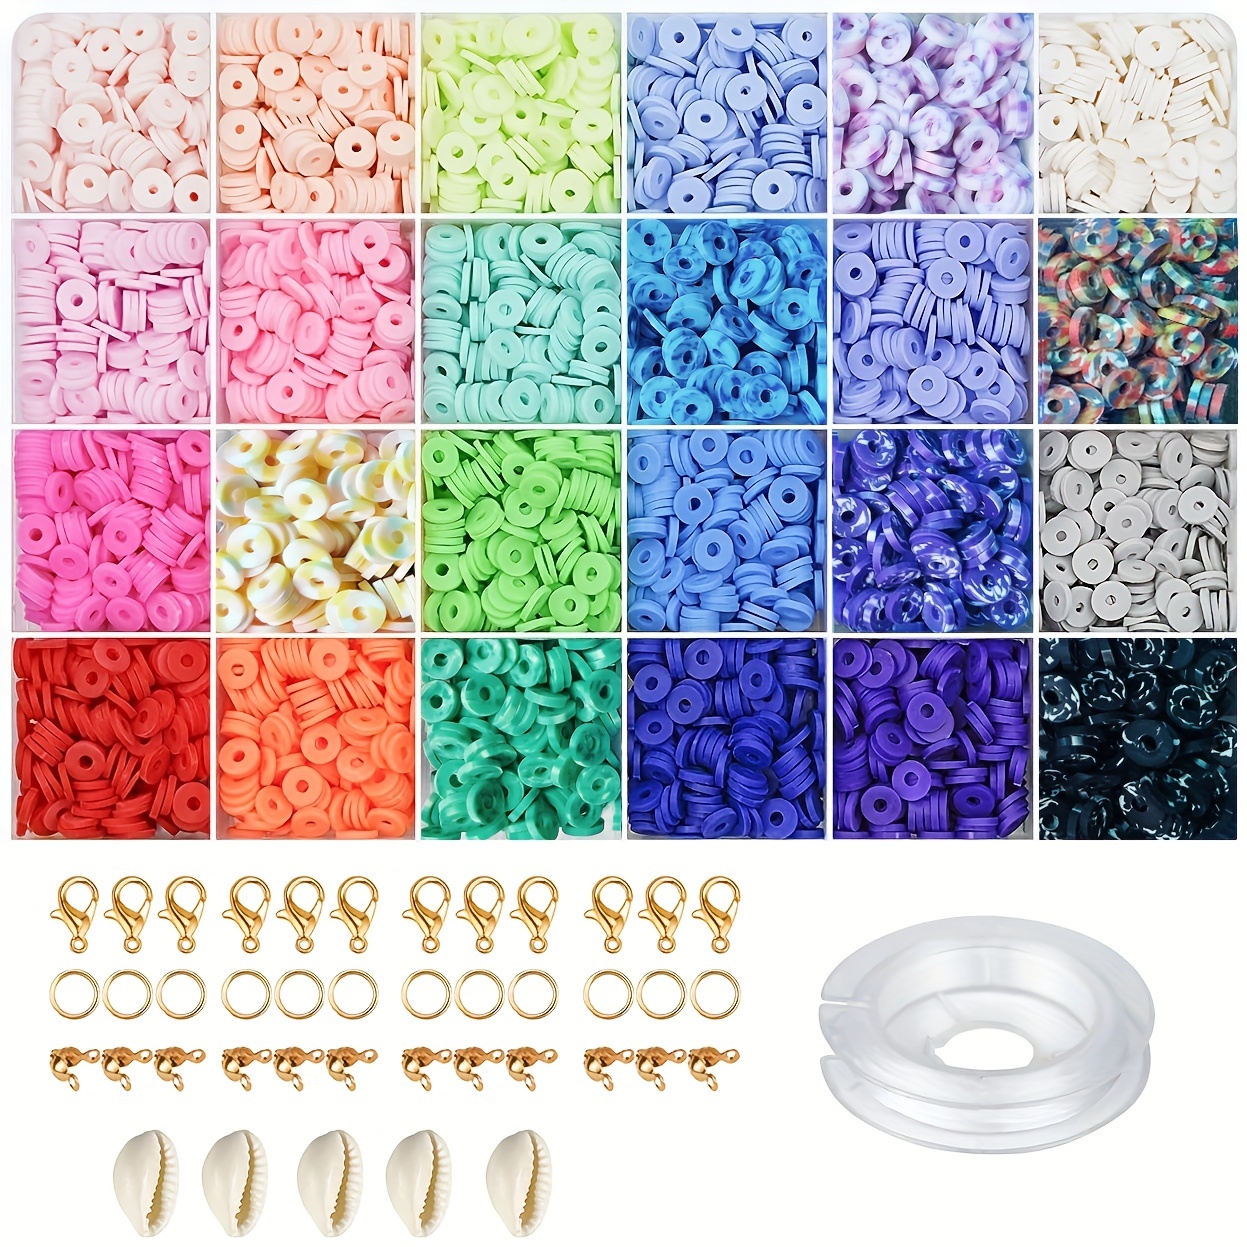 HTVRONT Clay Bead Bracelet Kit -16300Pcs Clay Beads Kit, 56 Colors Clay  Beads Bracelet Making Kit, Polymer Clay Bead Bracelet Kit, Clay Bead Set  for